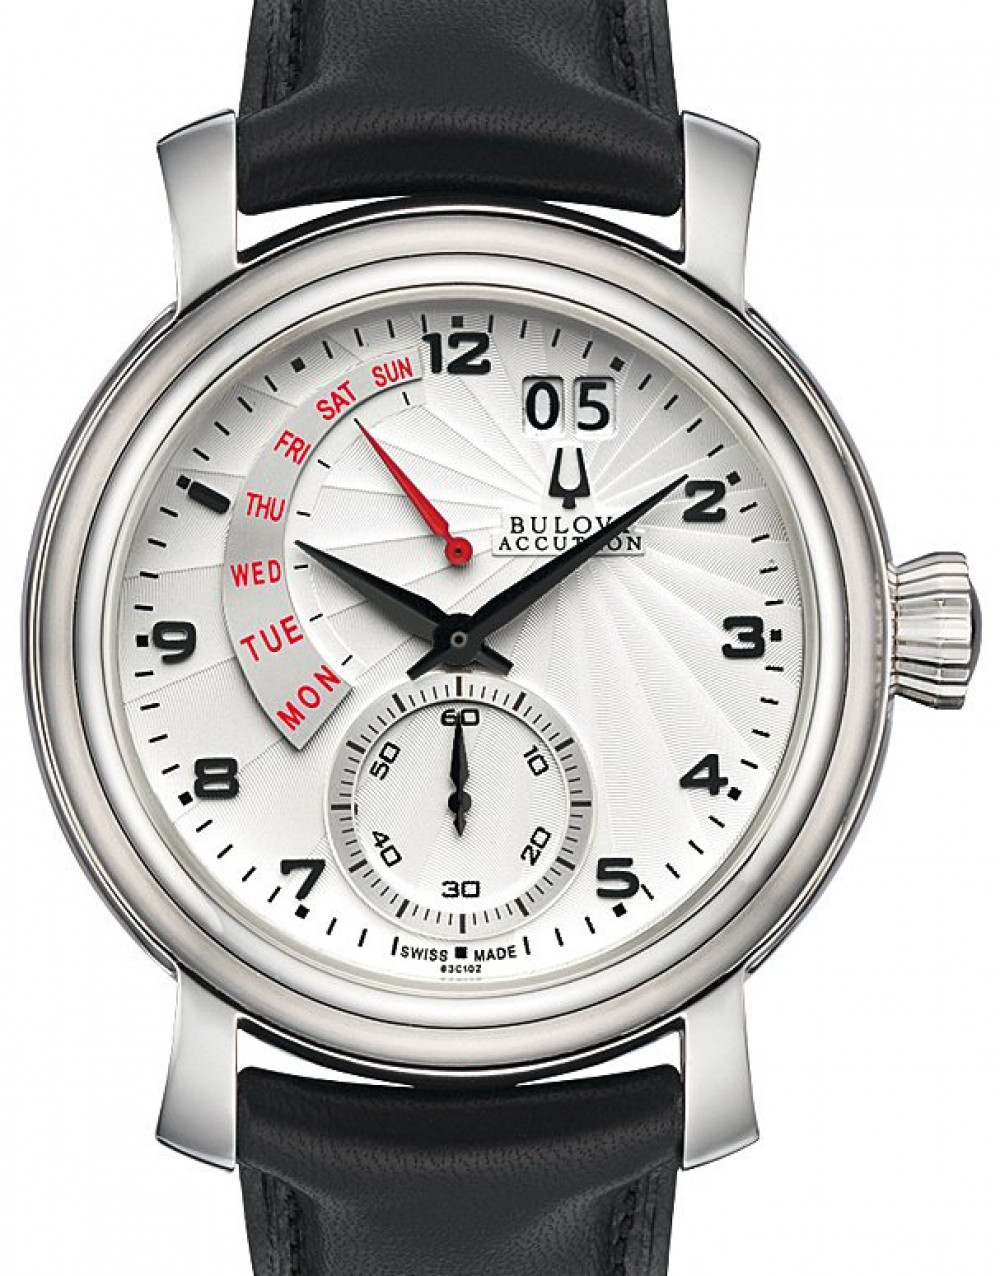 Zegarek firmy Accutron, model Amerigo